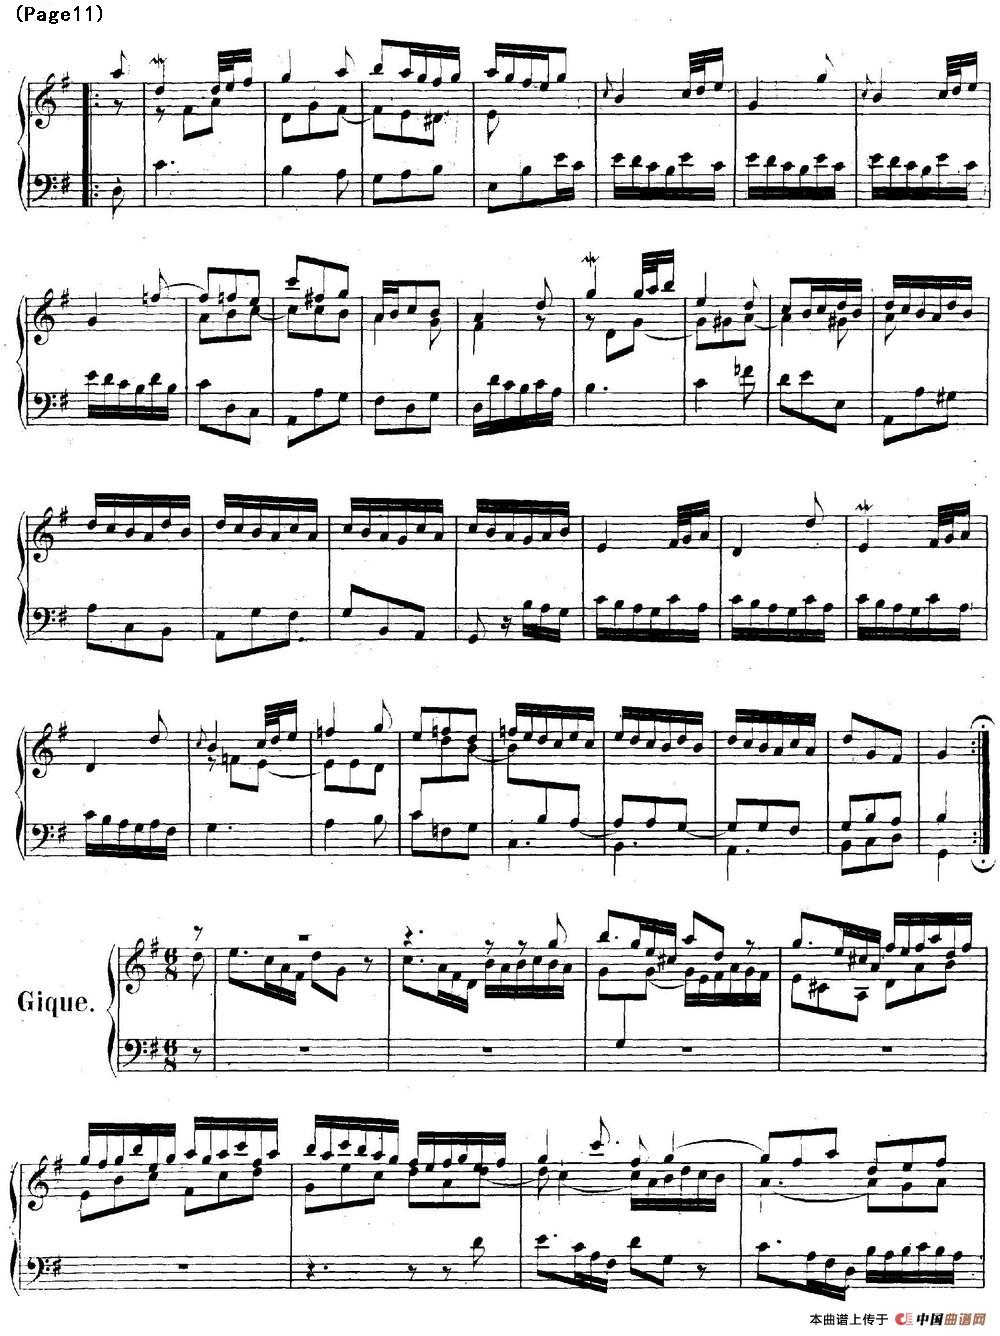 帕蒂塔6首德国组曲（No.5 G大调 巴赫 Partita G Major BWV 829）(1)_BWV0829_页面_11.jpg